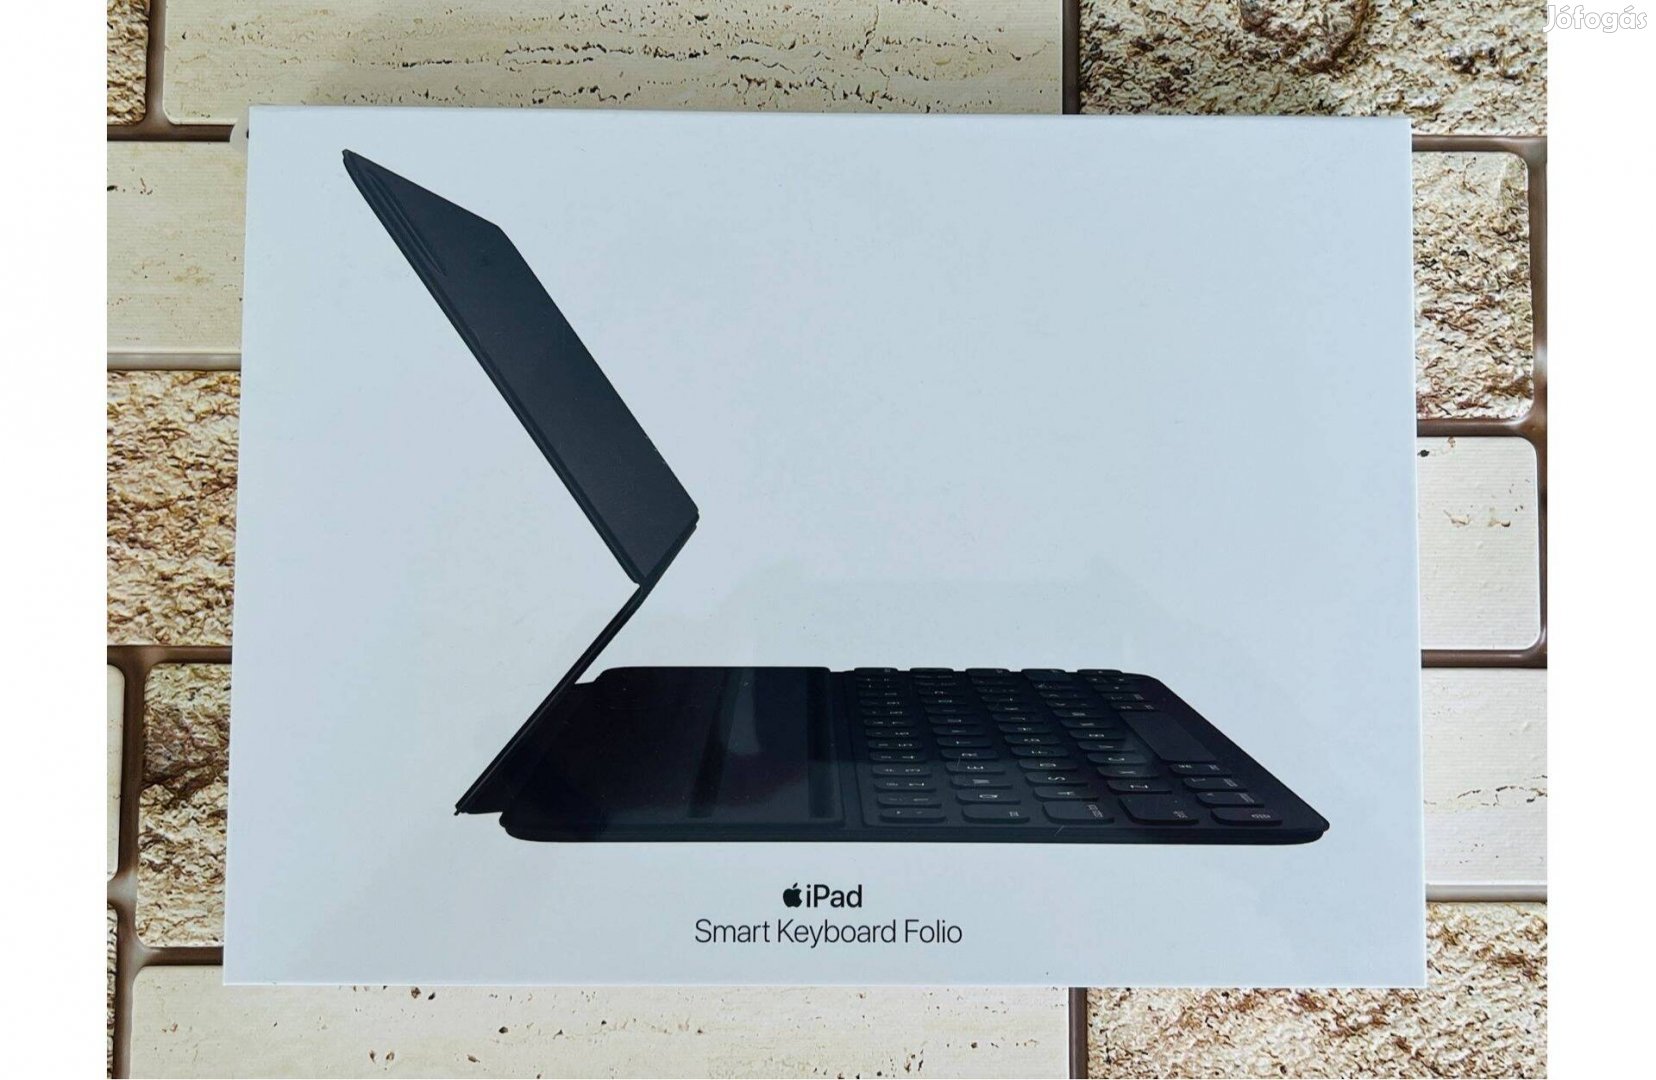 Eladó ipad Smart Keyboard Folio billentyűzet és tok,- Bontatlan